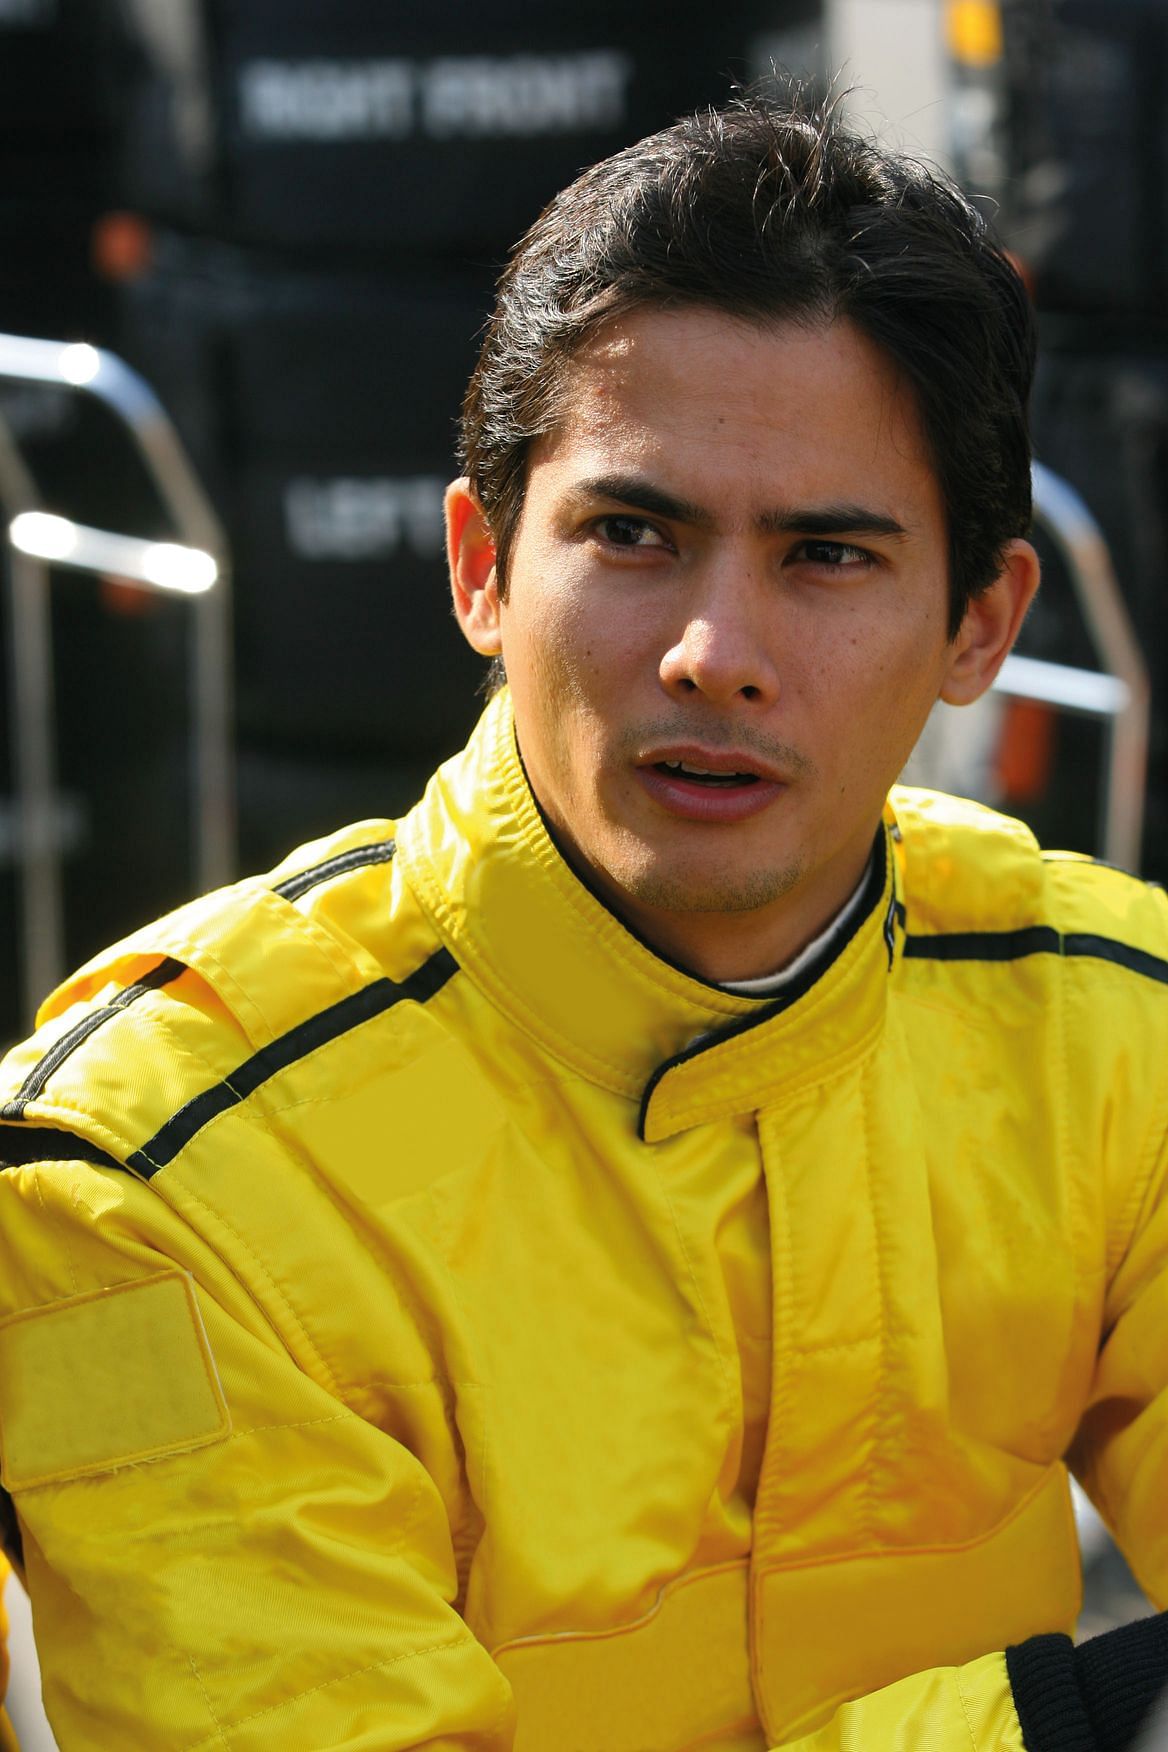 Alex Yoong challenging racetracks motoring